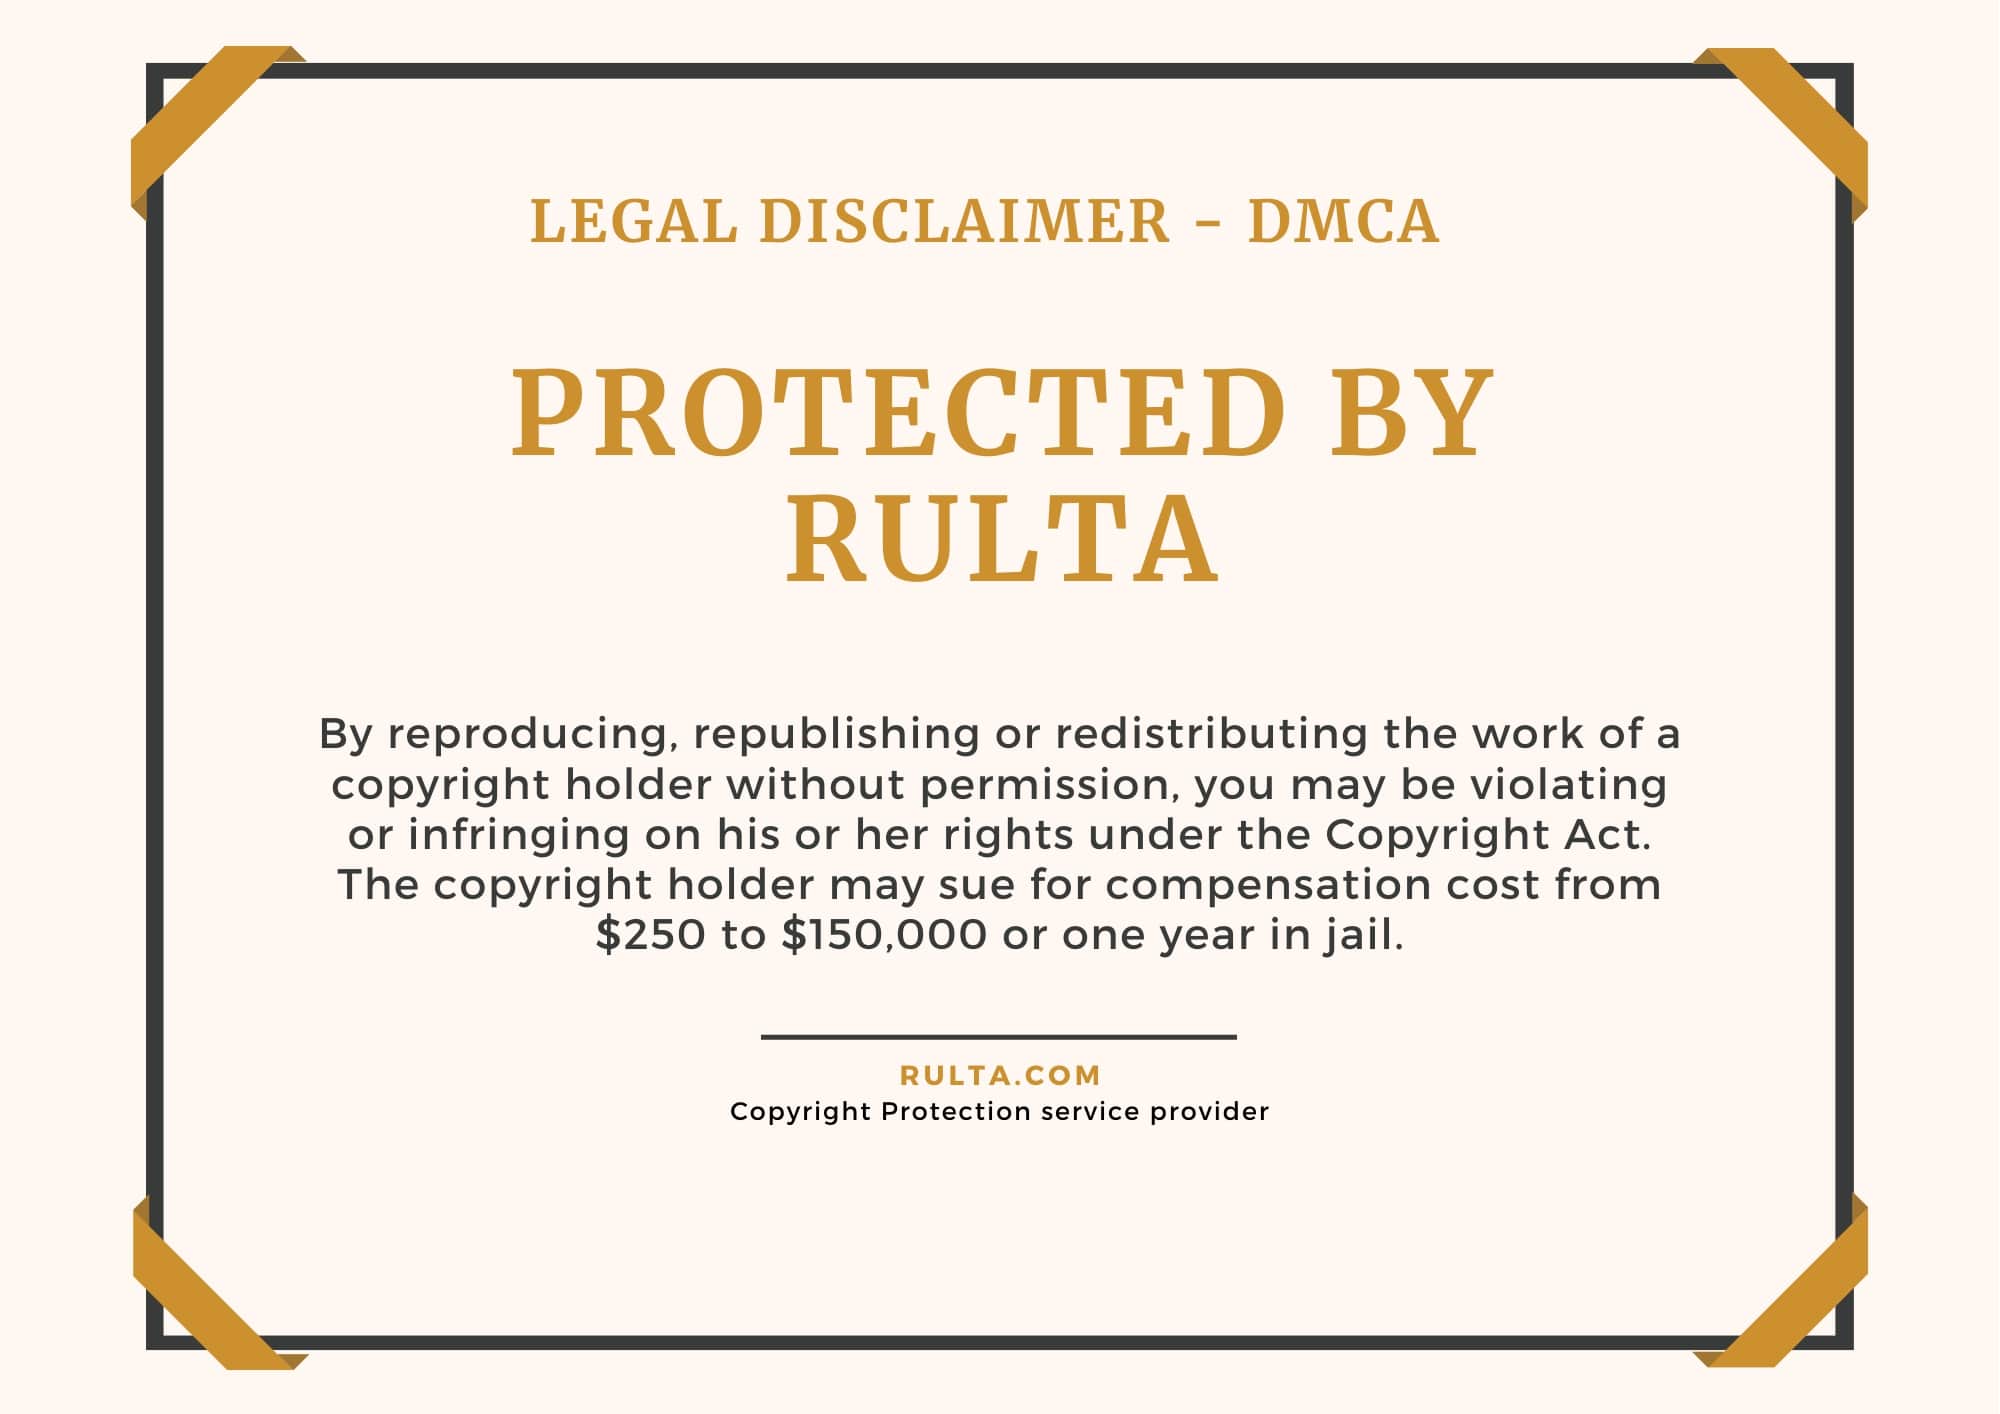 DMCA badge by Rulta - 7